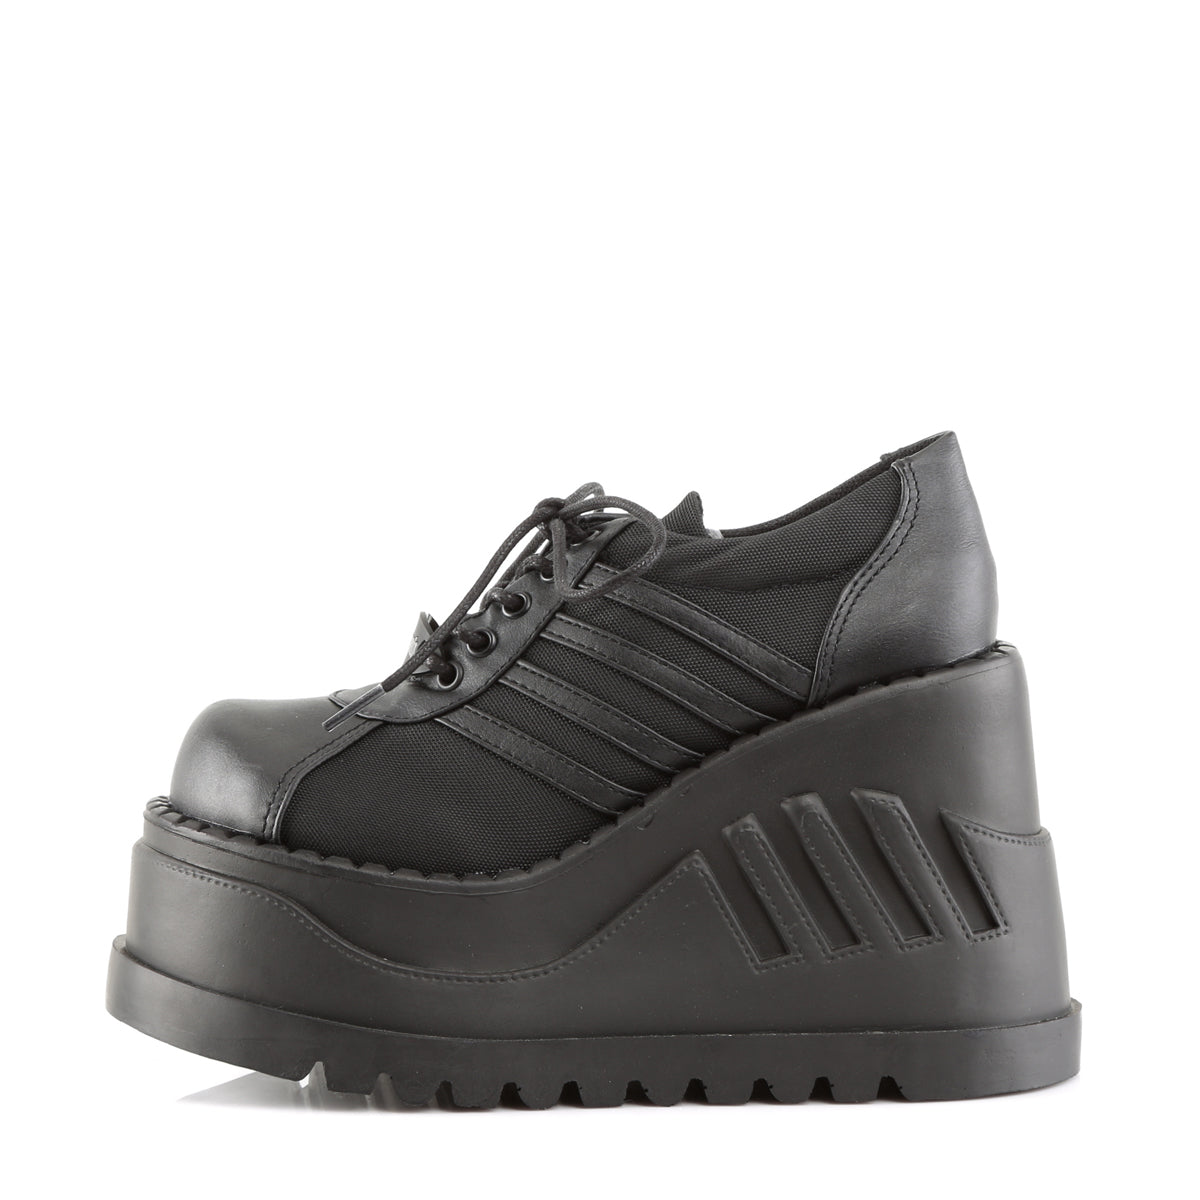 Wedge Platform Sneakers Black